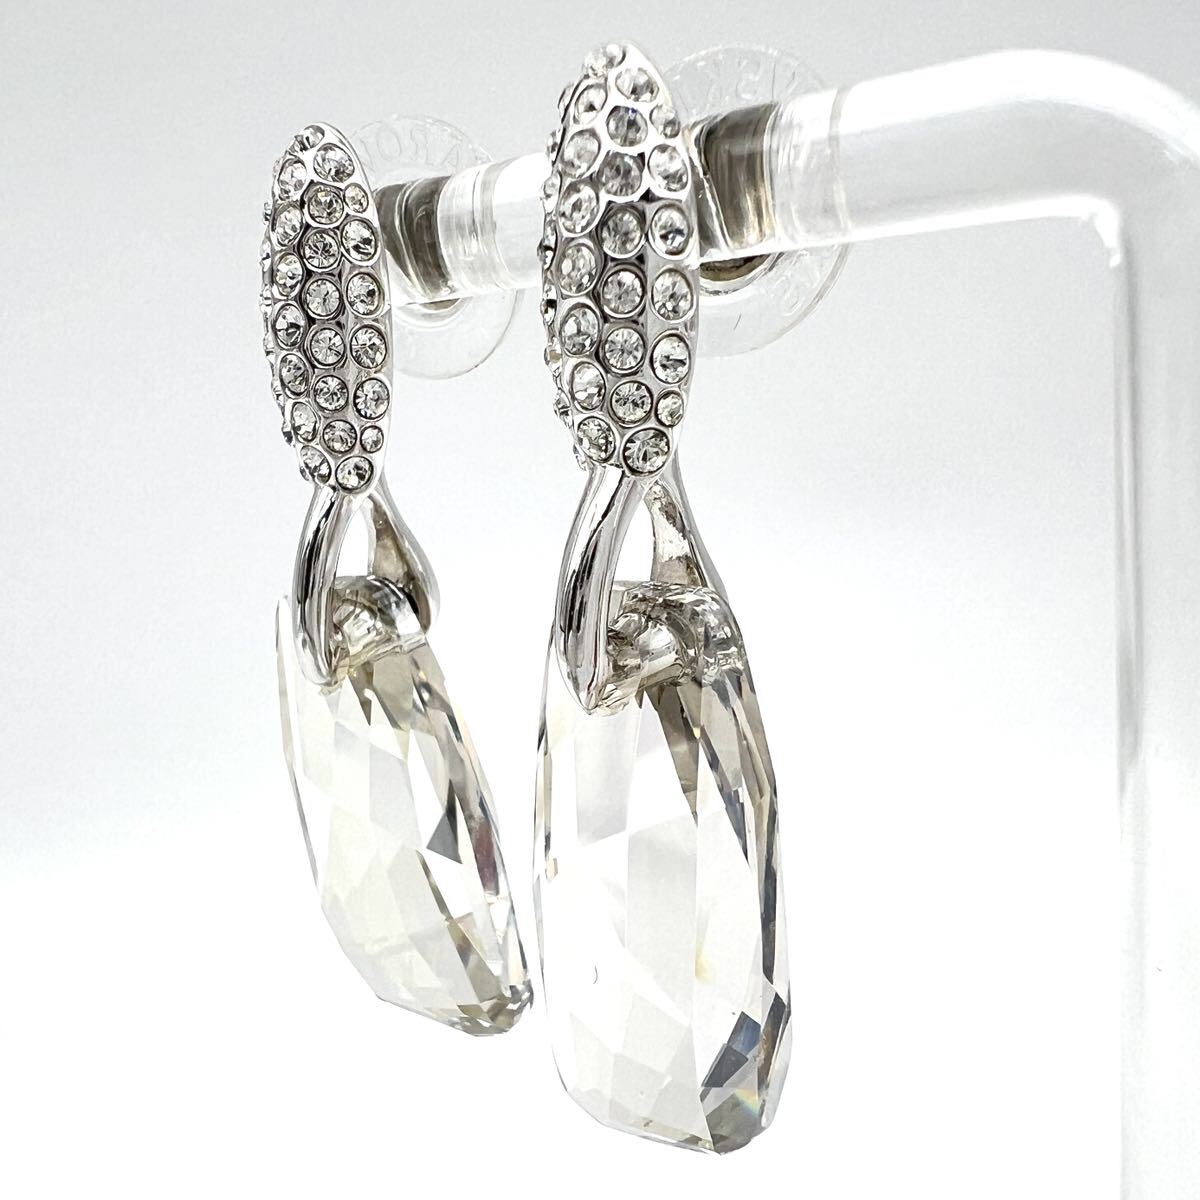 SWAROVSKIl Swarovski серьги [ Acty ] Drop серебряный цвет стразы crystal стекло серьги-гвоздики бренд a501et